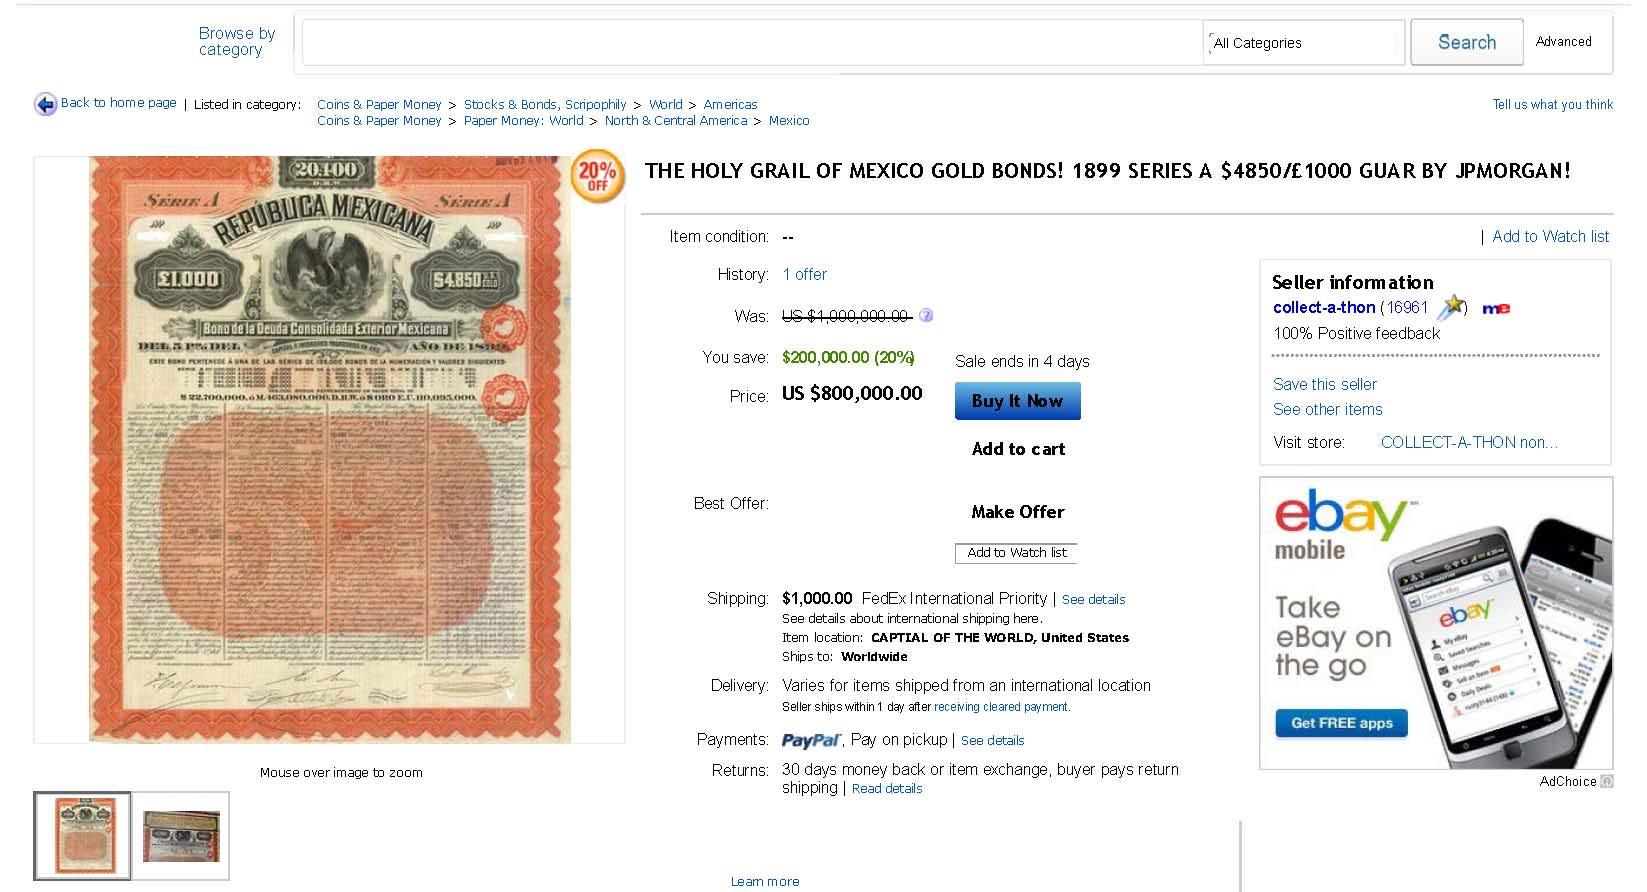 Alte mexikanische Bankaktien und Bonds Hier ein weiteres Beispiel: collect-a-thon bietet auf ebay zum Mondpreis von $800.000 